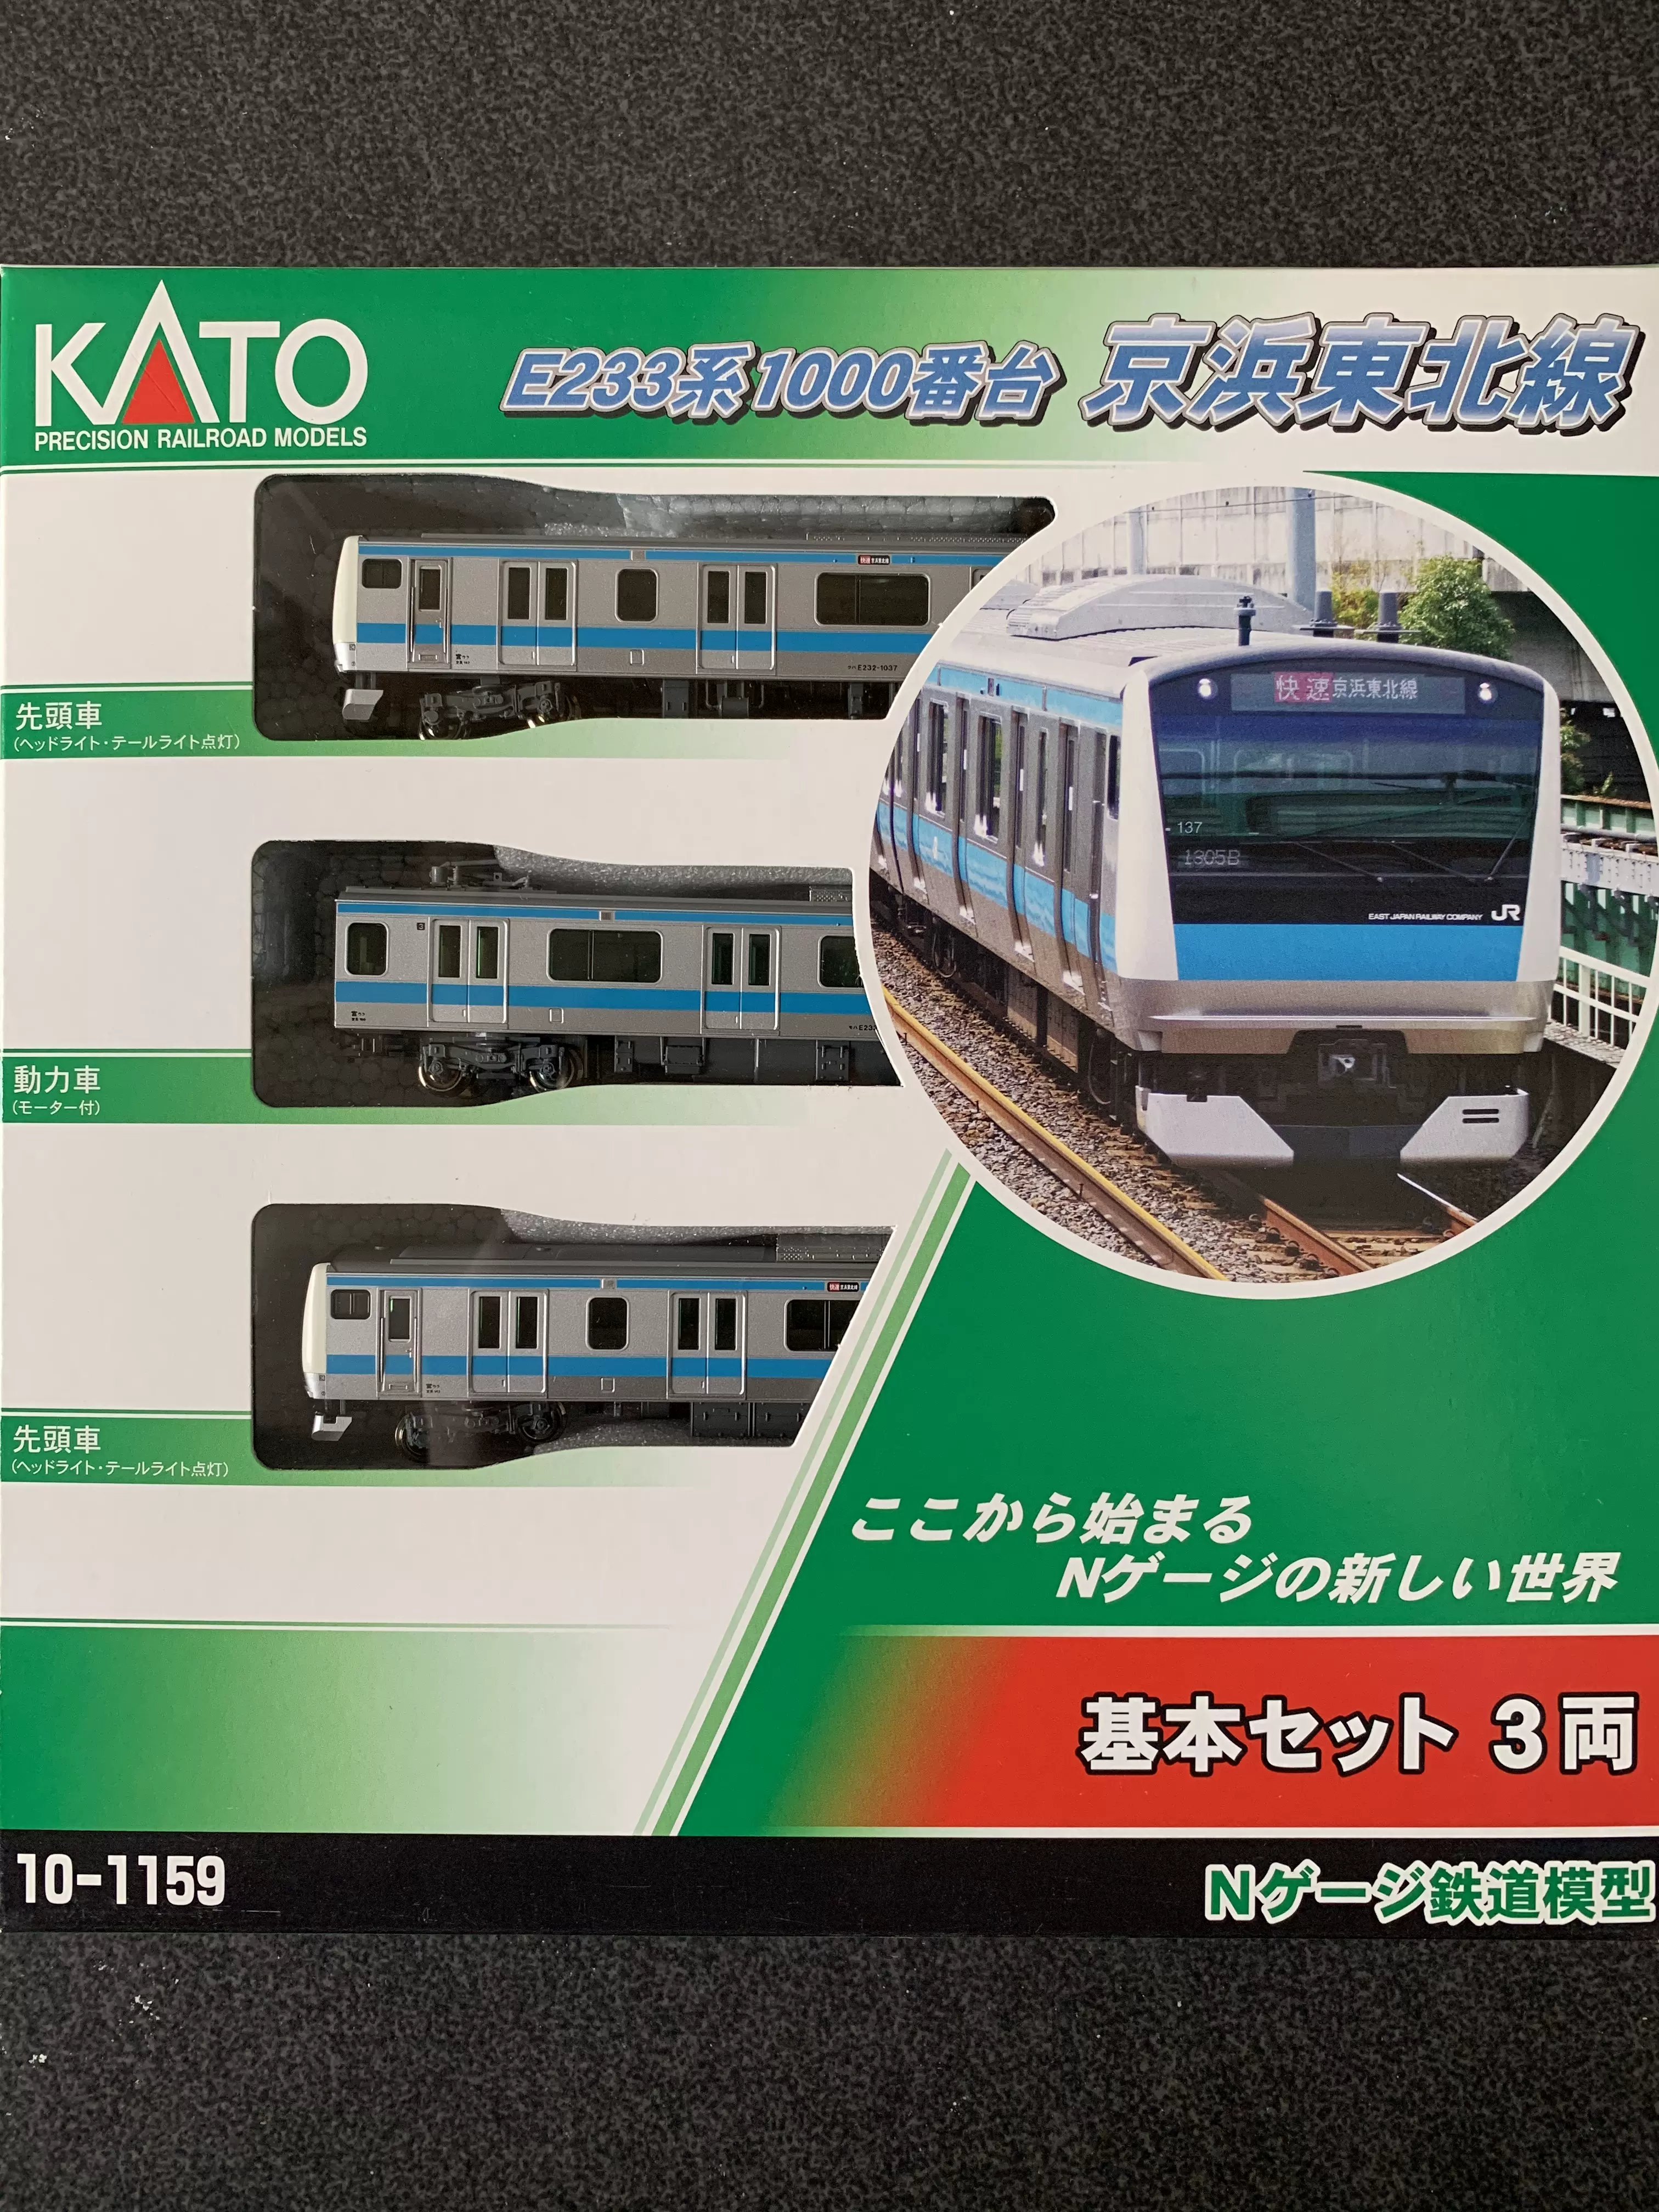 KATO】N比例10-1159 E233系1000番台京浜东北线3节基本-Taobao